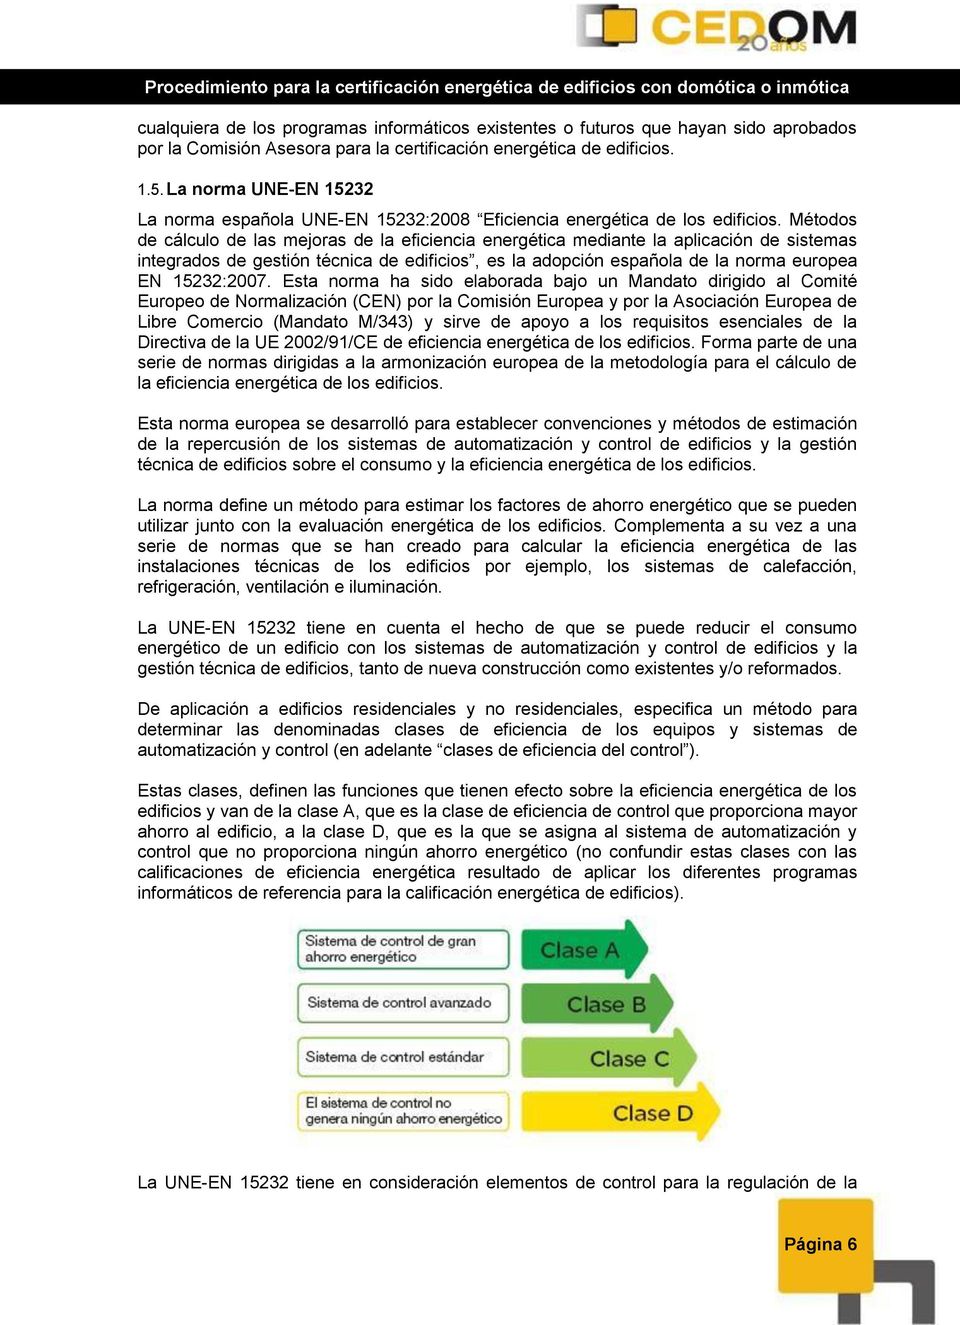 Métodos de cálculo de las mejoras de la eficiencia energética mediante la aplicación de sistemas integrados de gestión técnica de edificios, es la adopción española de la norma europea EN 15232:2007.